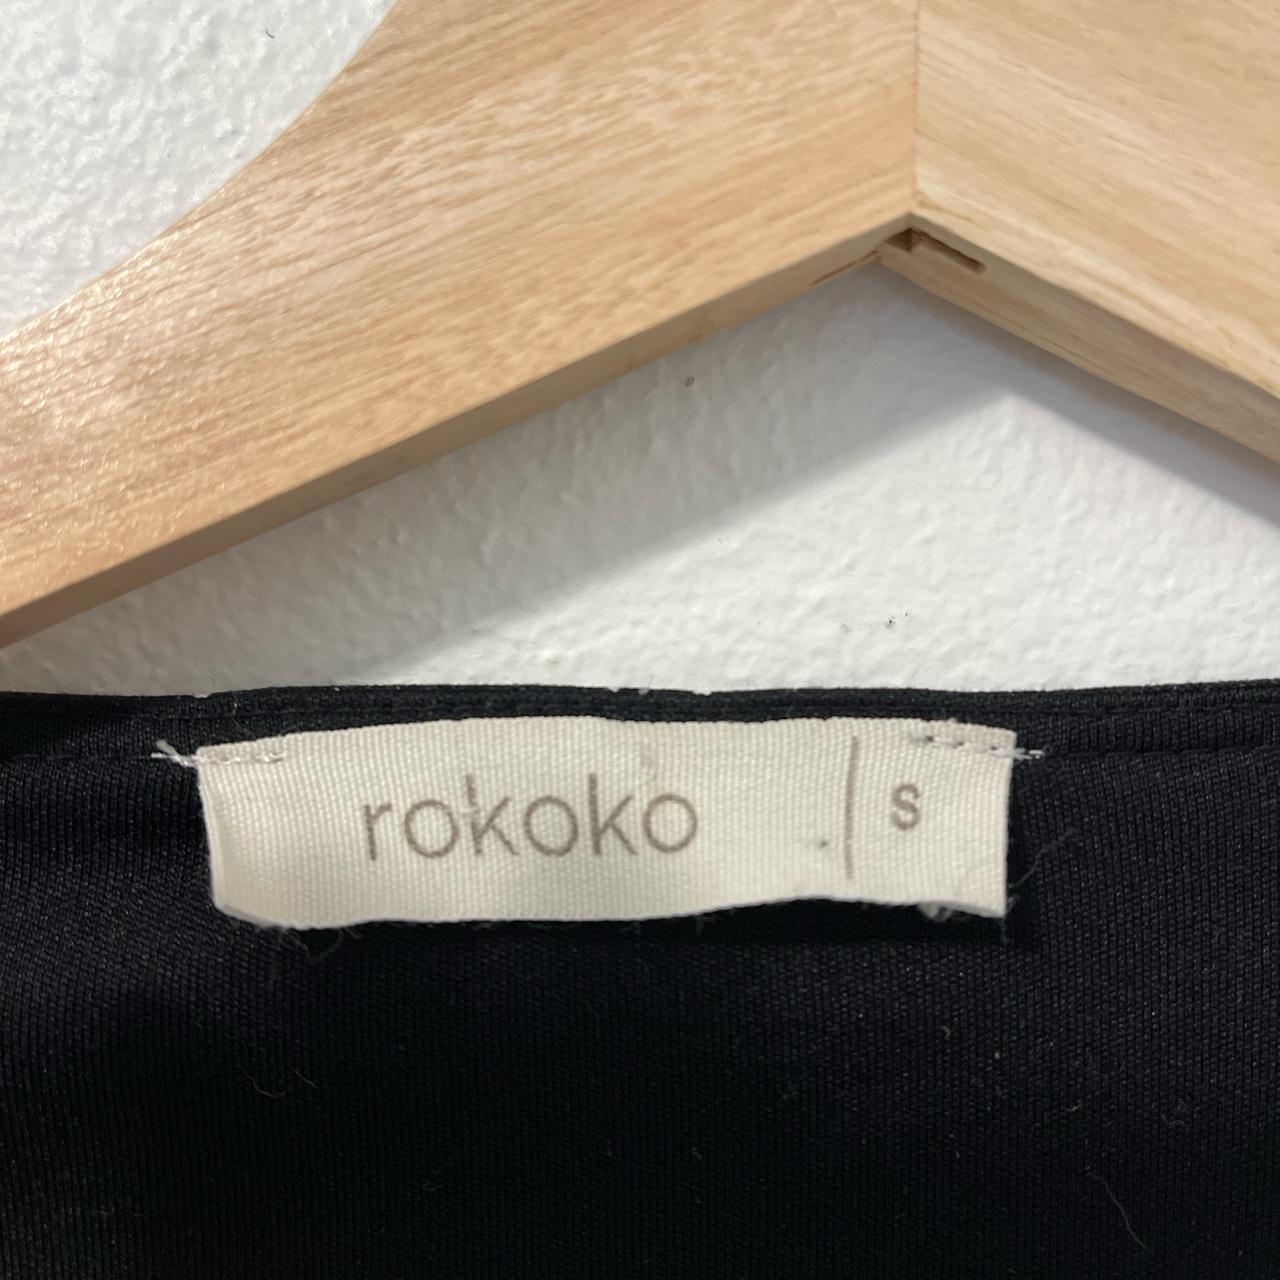 Rokoko Women's Black and White Dress (2)